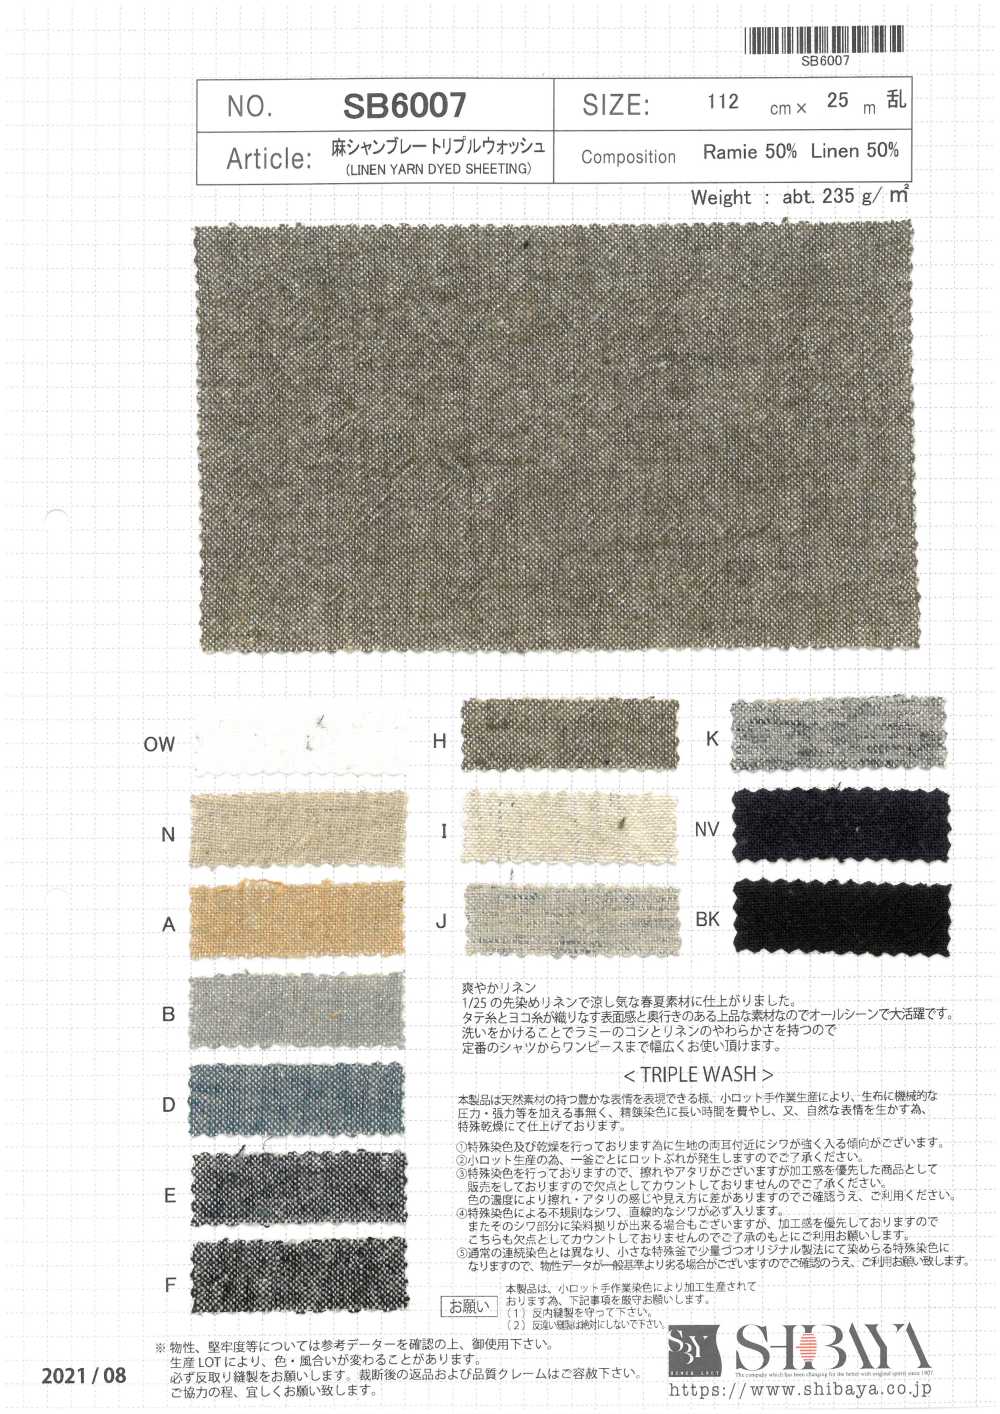 SB6007 Lino Chambray Triple Lavado[Fabrica Textil] SHIBAYA